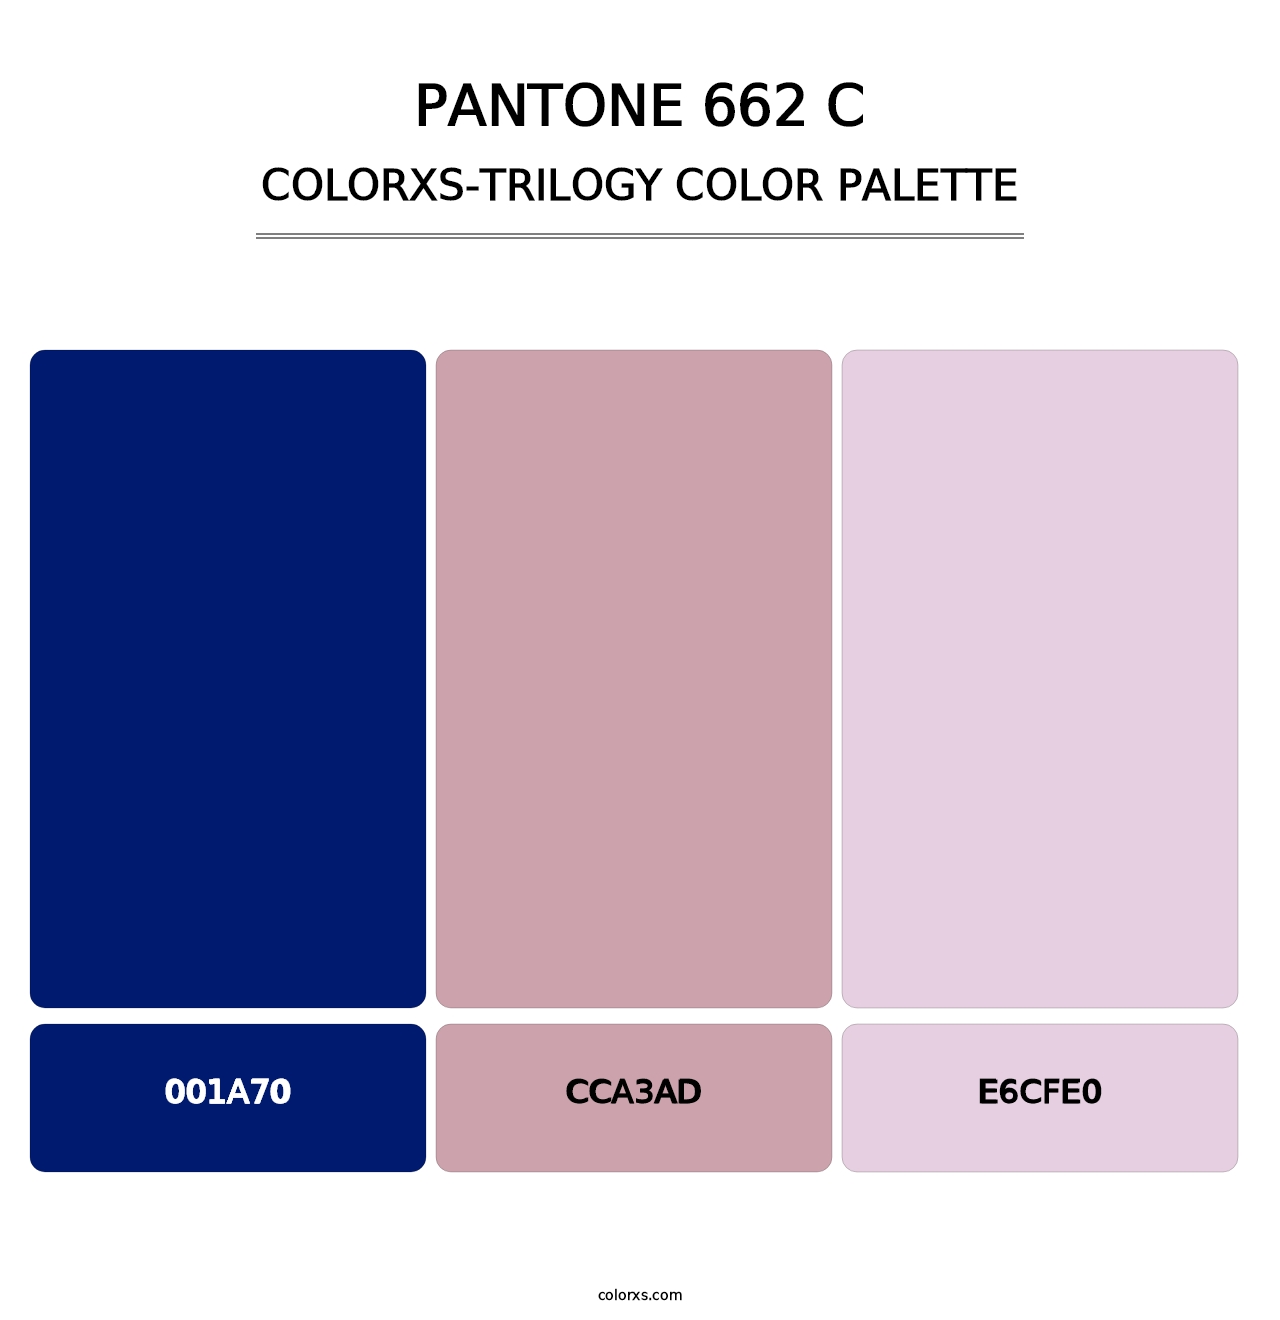 PANTONE 662 C - Colorxs Trilogy Palette